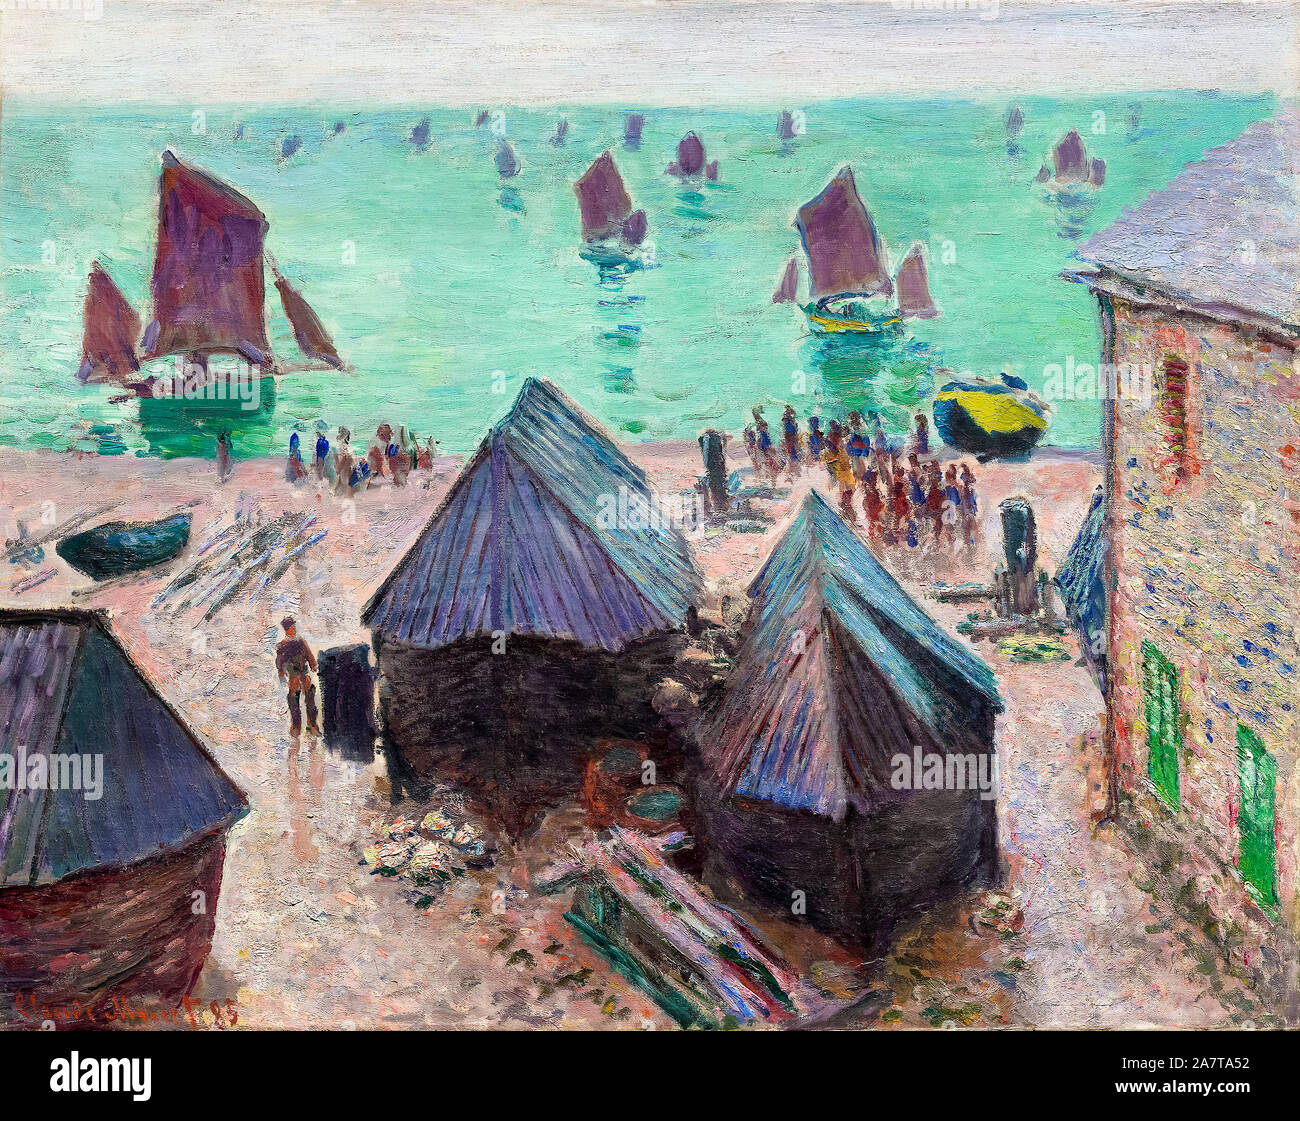 Claude Monet, The Departure of the Boats, Étretat, landscape painting, 1885 Stock Photo